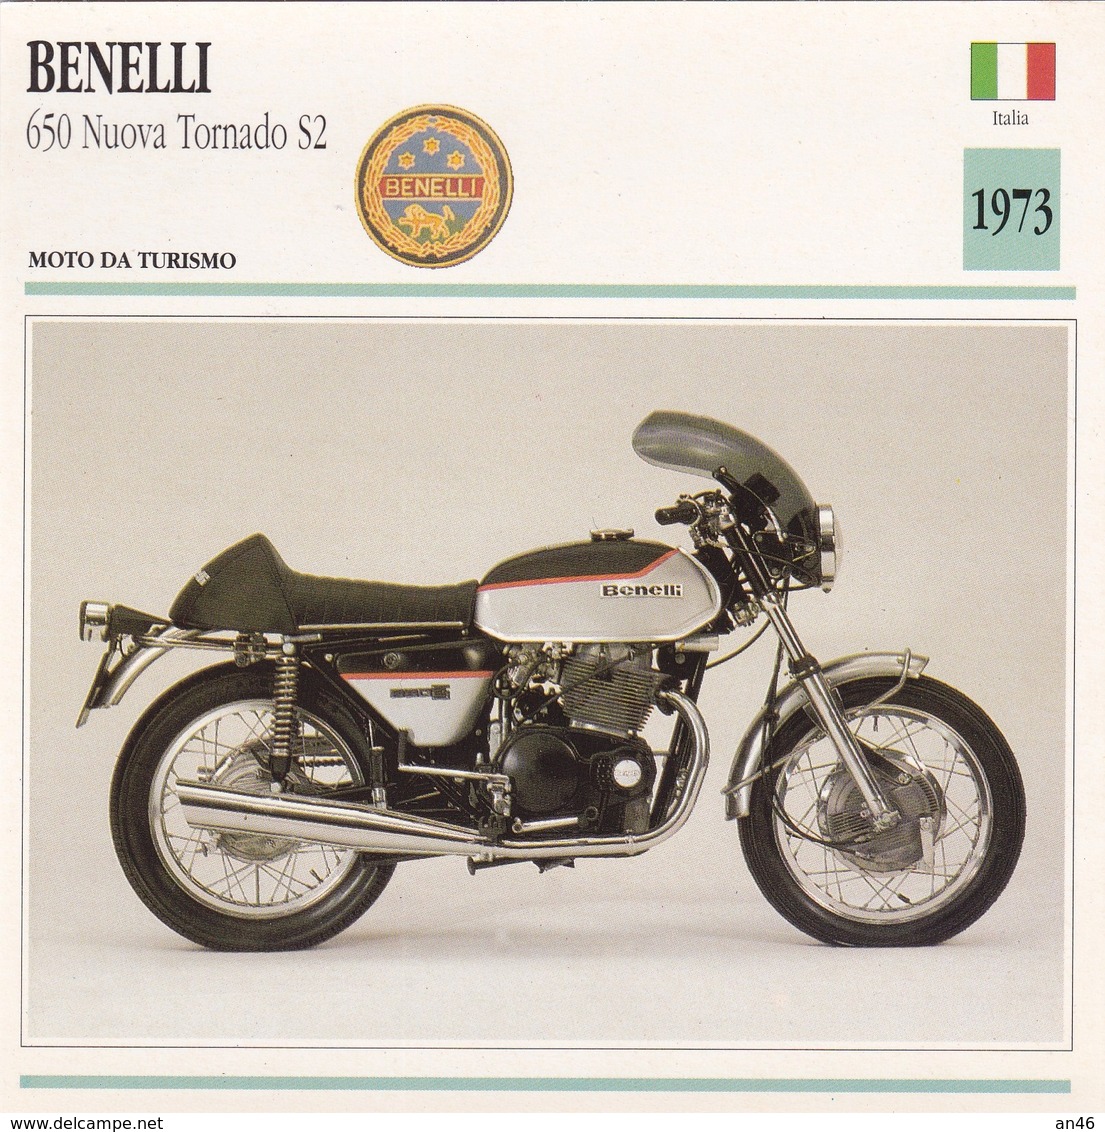 MOTO DA TURISMO BENELLI 650 NUOVA TORNADO S2 ITALIA 1973 DESCRIZIONE COMPLETA SUL RETRO AUTENTICA 100% - Werbung